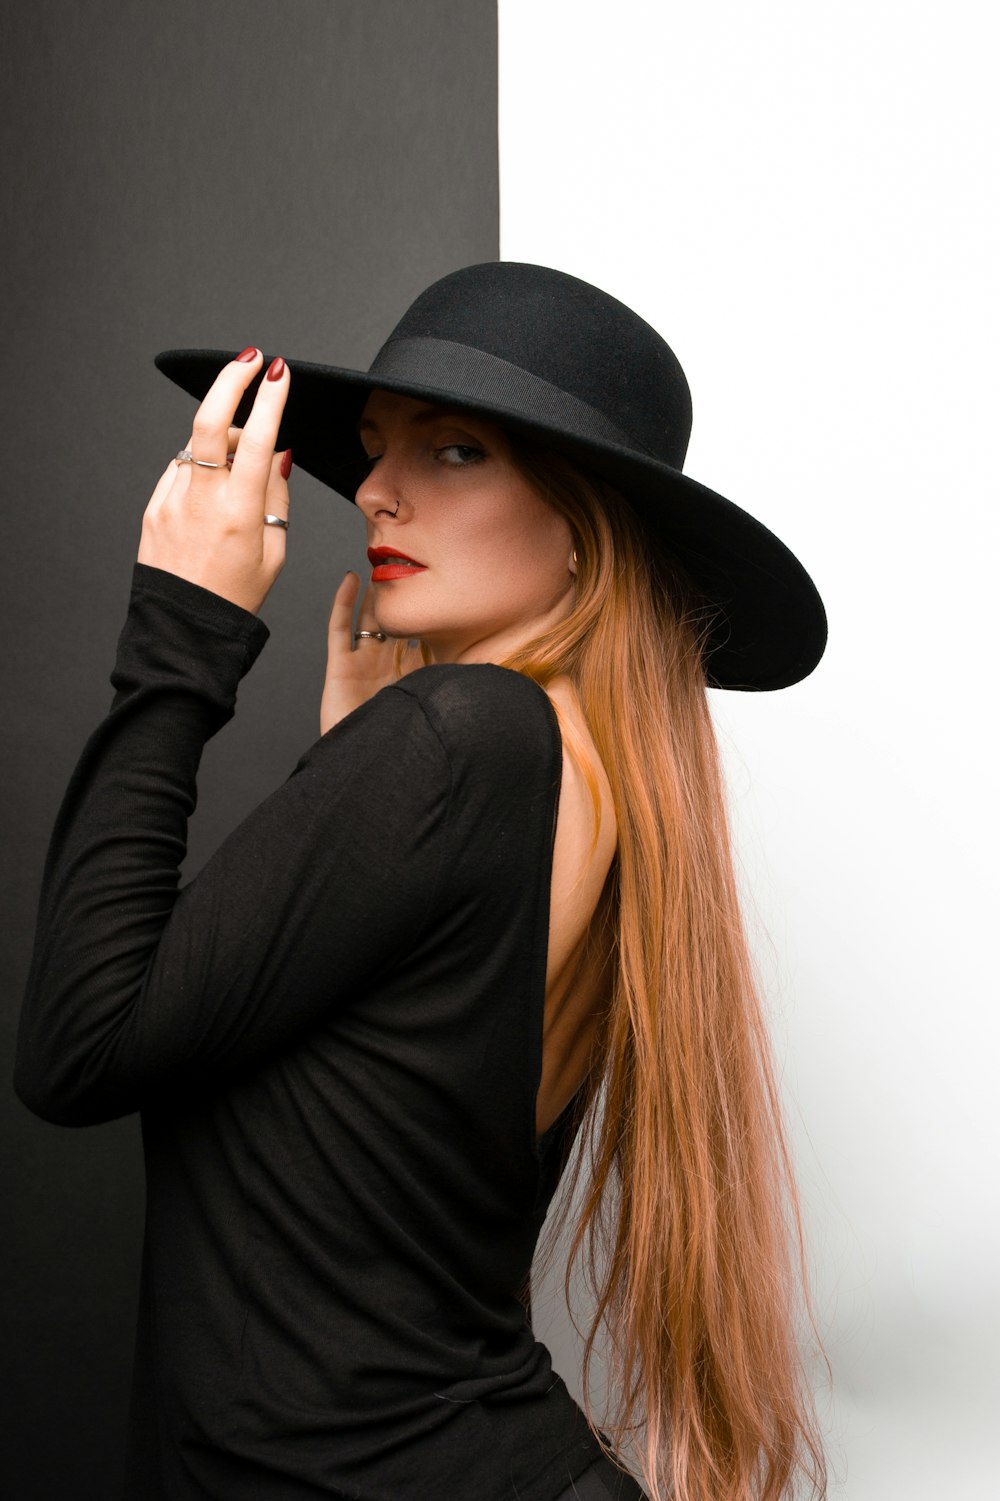 Una donna con i capelli lunghi che indossa un cappello nero